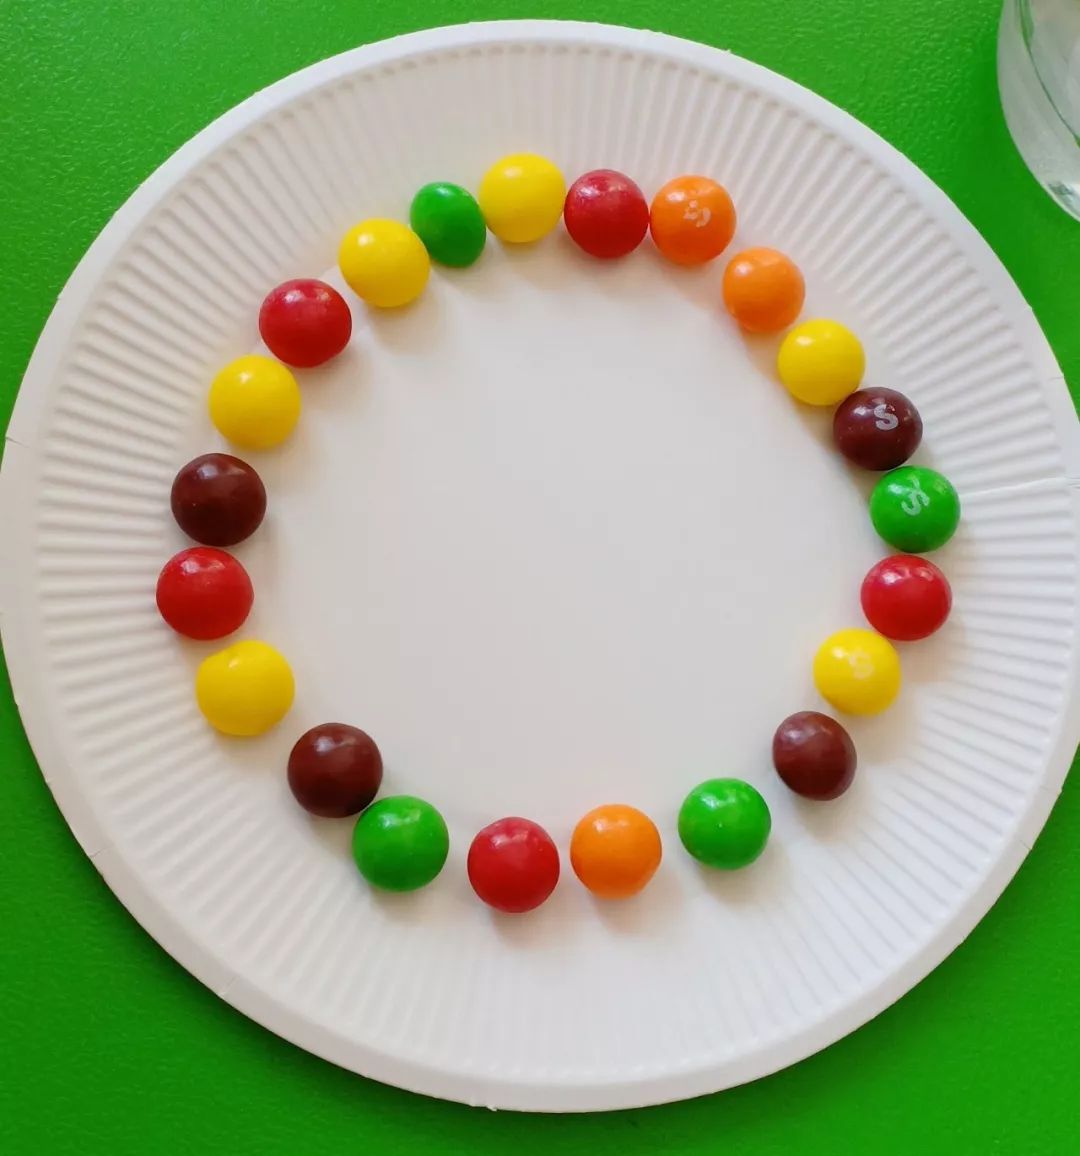 科学小实验玩转色彩彩虹糖的秘密